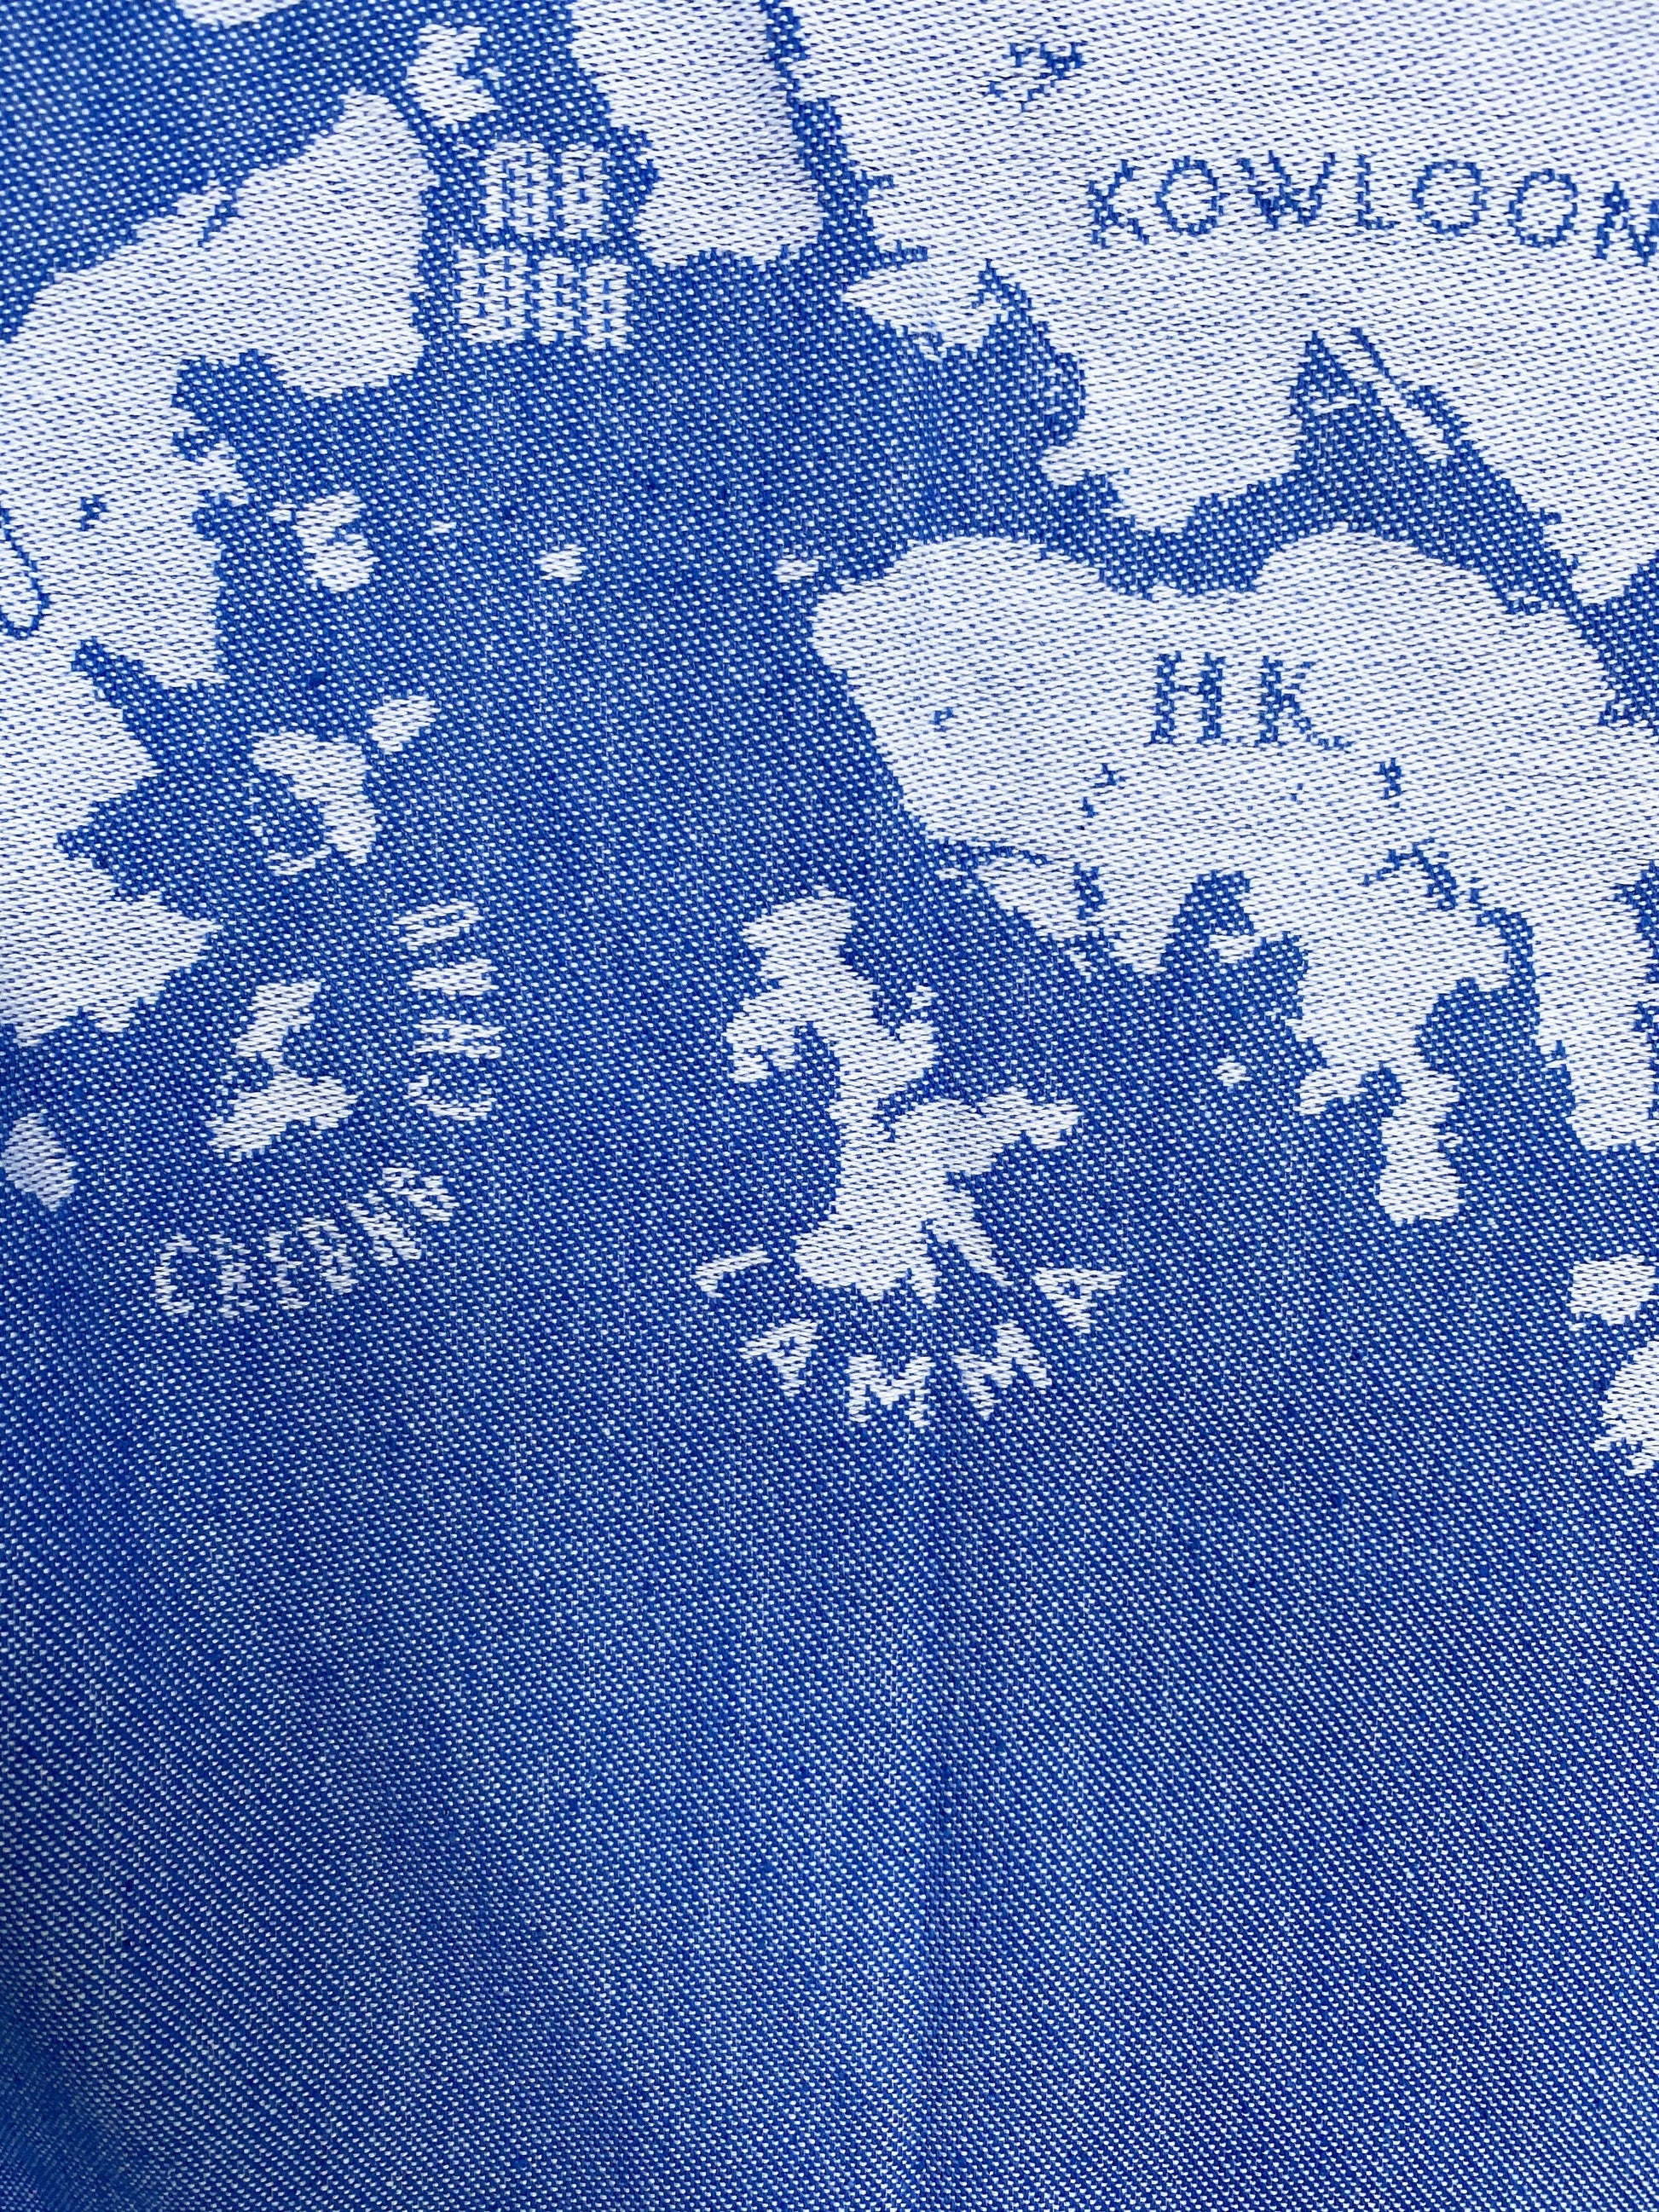 Hong Kong Tea Towel - tinyislandmaps